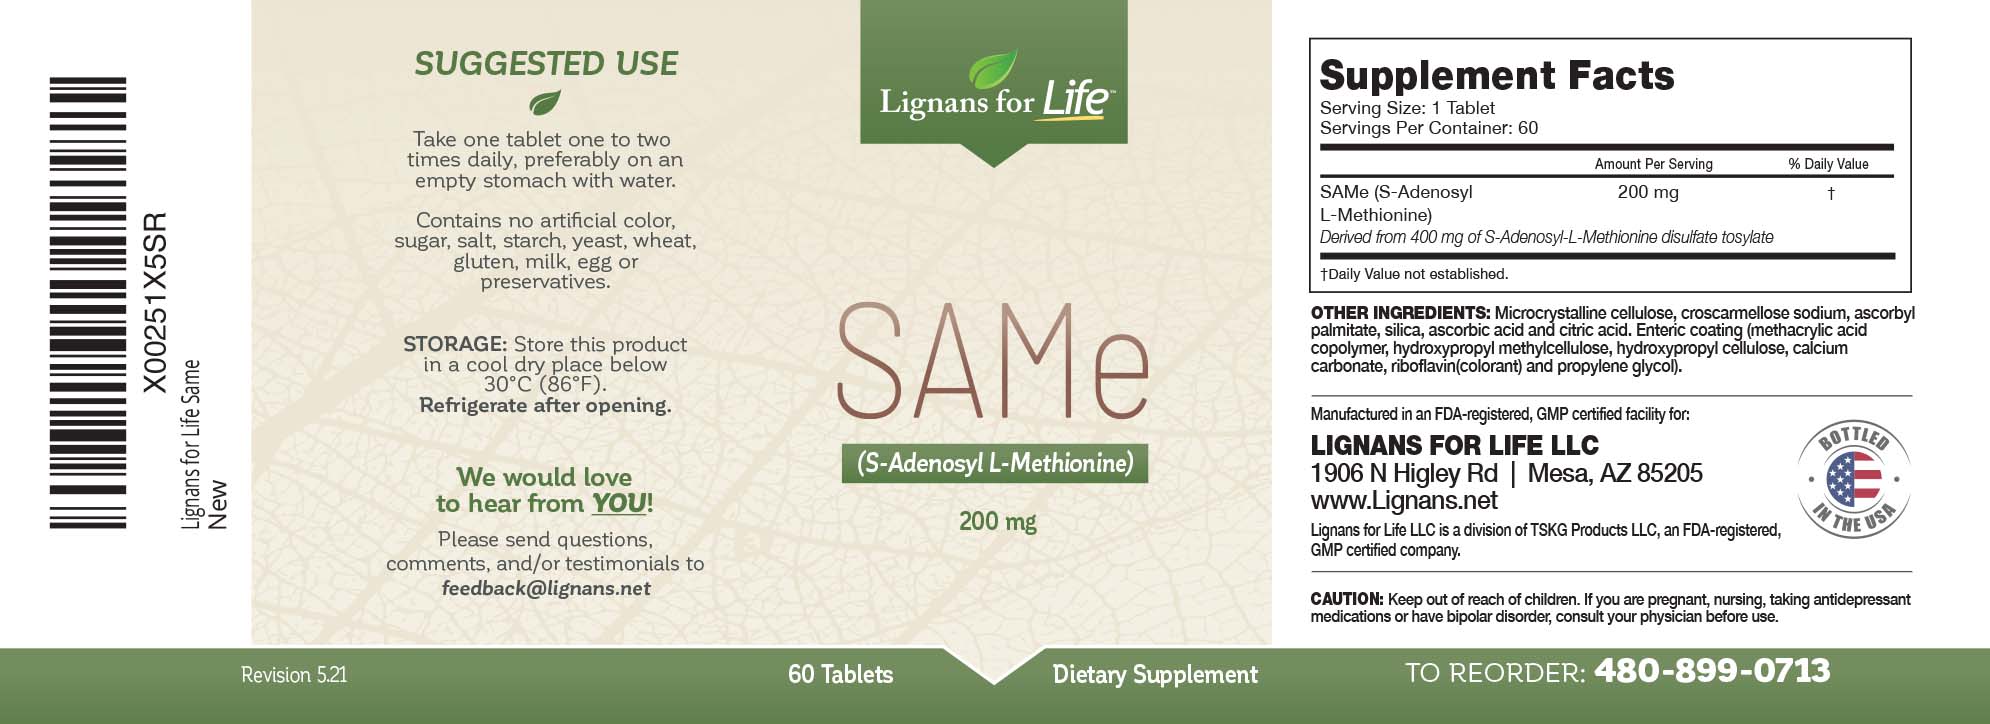 LFL SAM-e label